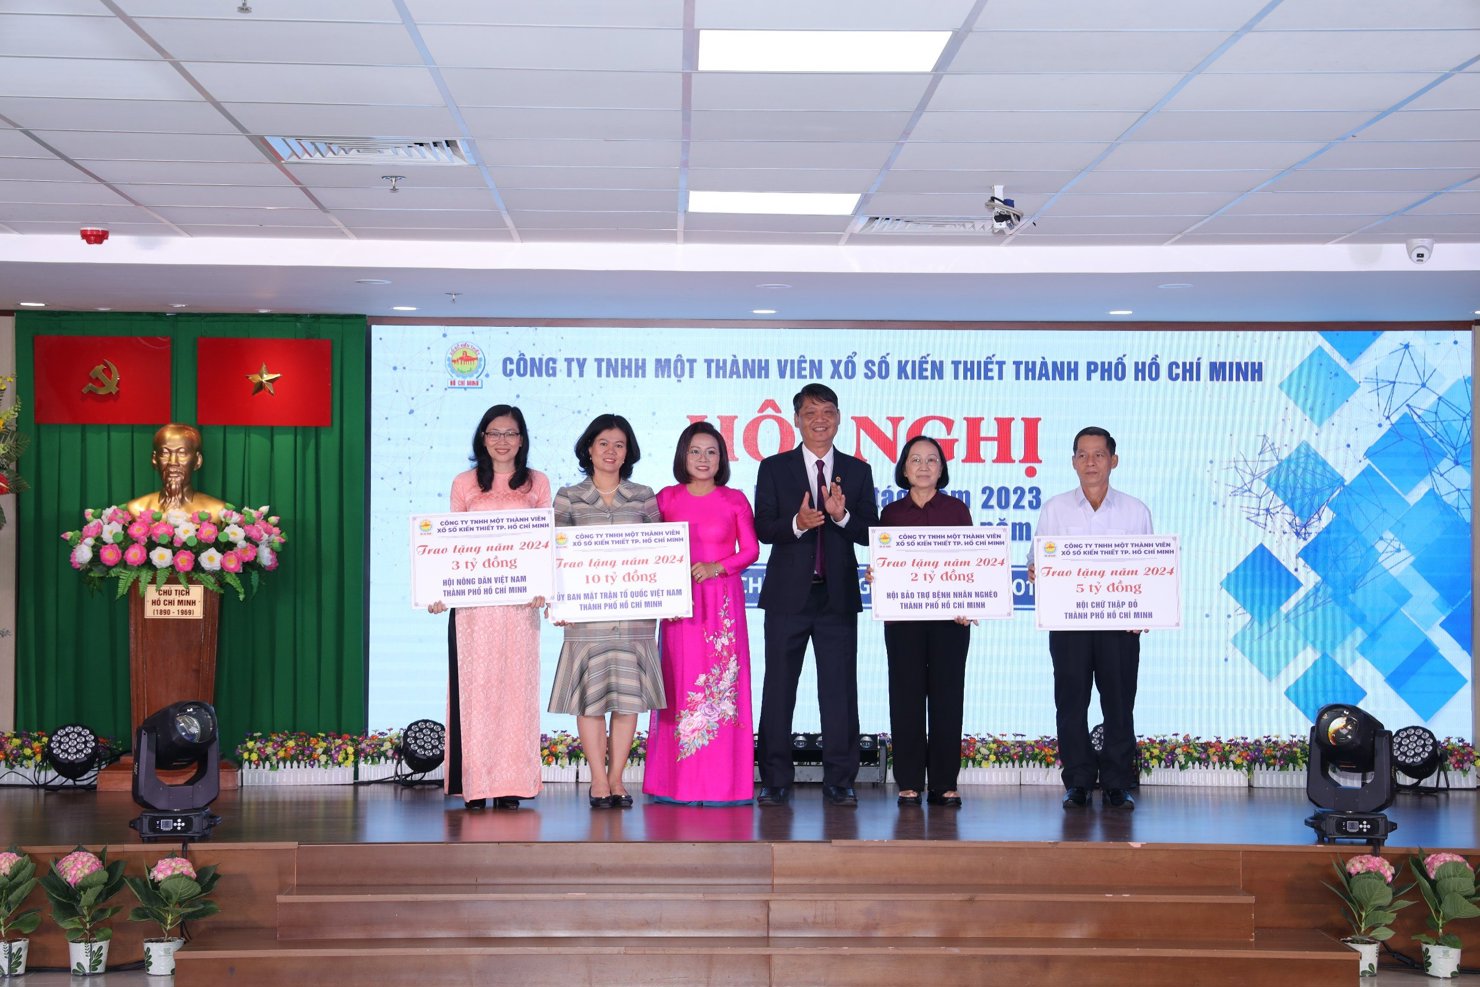 Công ty TNHH MTV Xổ số Kiến thiết thành phố Hồ Chí Minh chung tay, cùng Ủy ban Mặt trận Tổ quốc Việt Nam thành phố, Hội Bảo trợ Bệnh nhân nghèo thành phố, Hội Nông dân Việt Nam thành phố và Hội Chữ Thập đỏ Thành phố thực hiện công tác từ thiện-an sinh-xã hội trong năm 2024.